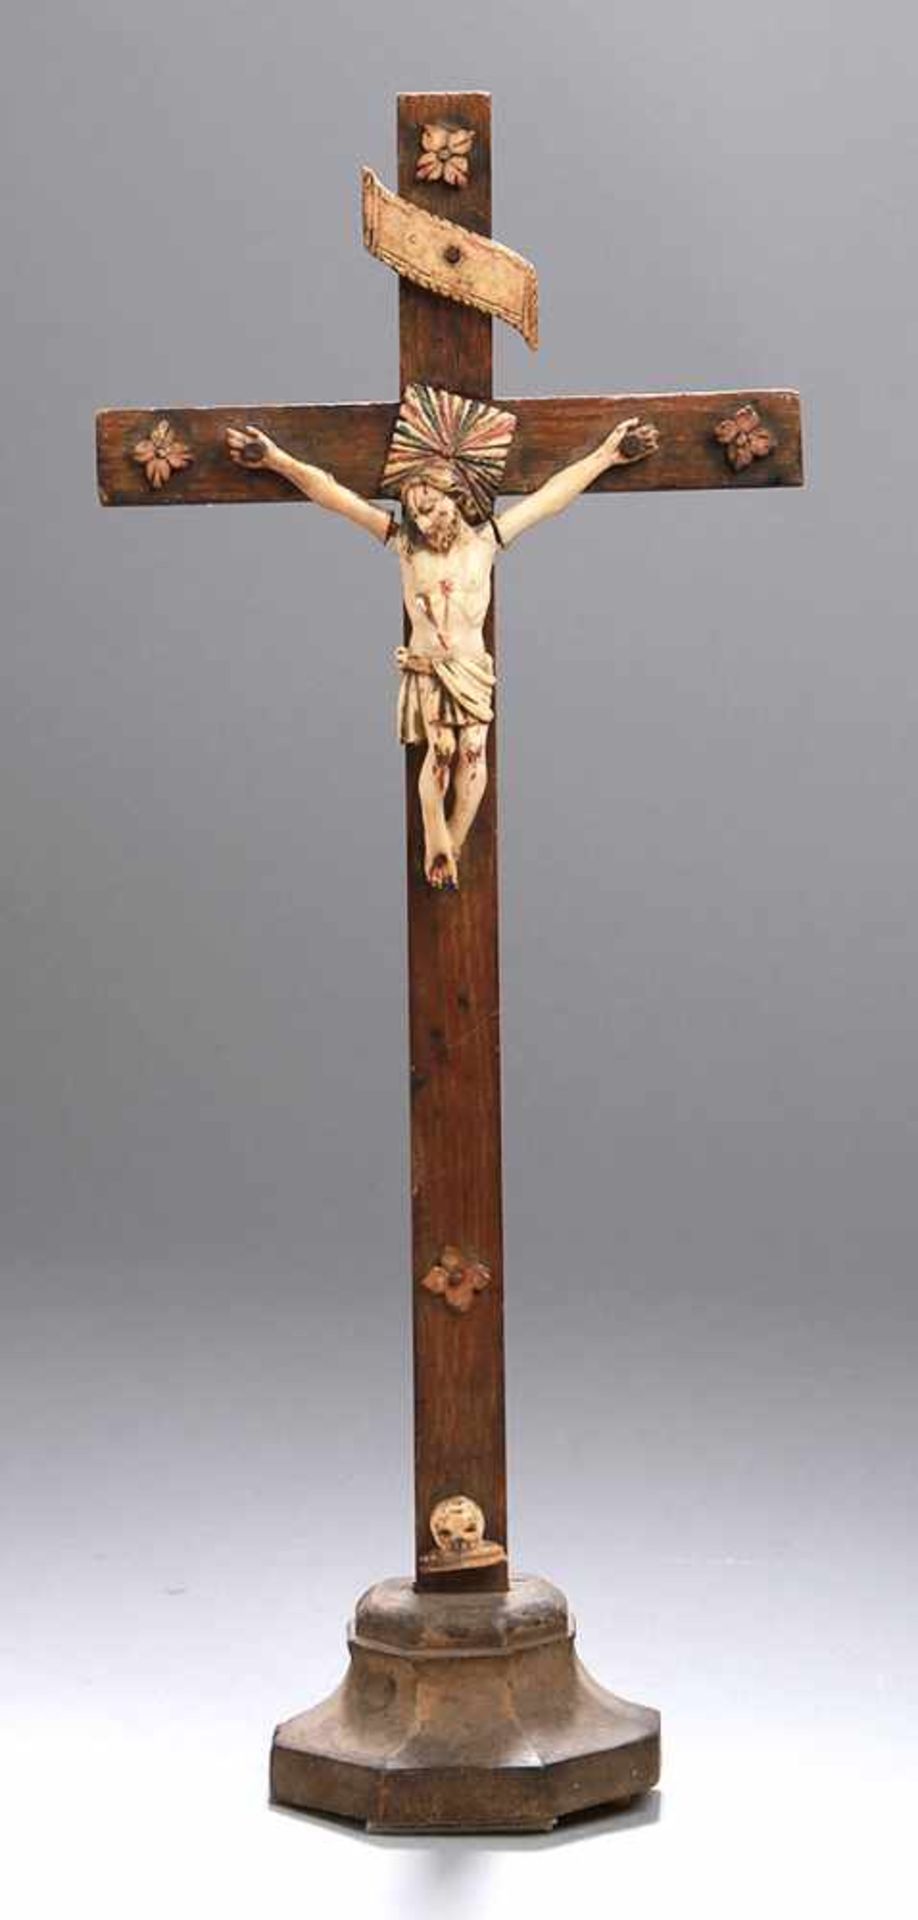 Holz-Standkreuz, alpenländisch, 17./18. Jh., barocker Sockel mit schlichtem Kreuz,